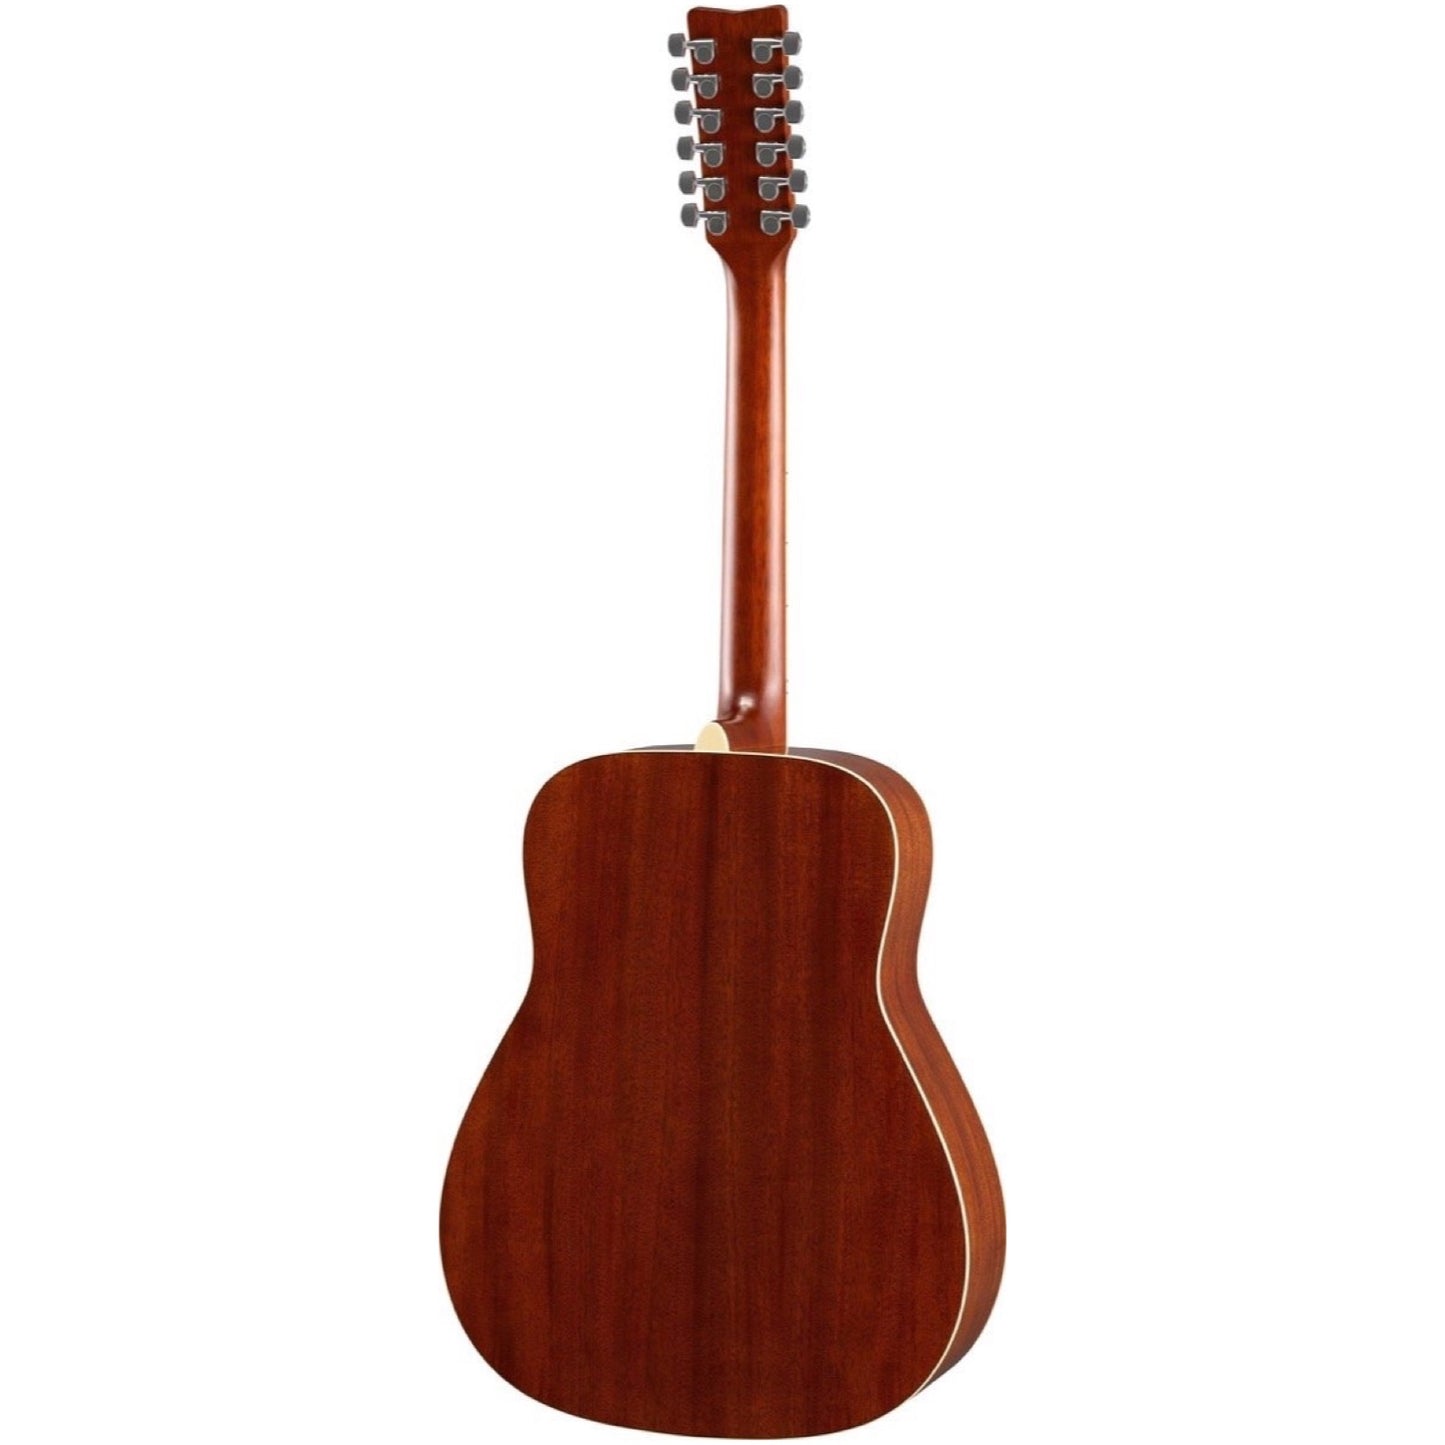 Yamaha FG82012 Folk Acoustic Guitar, 12-String